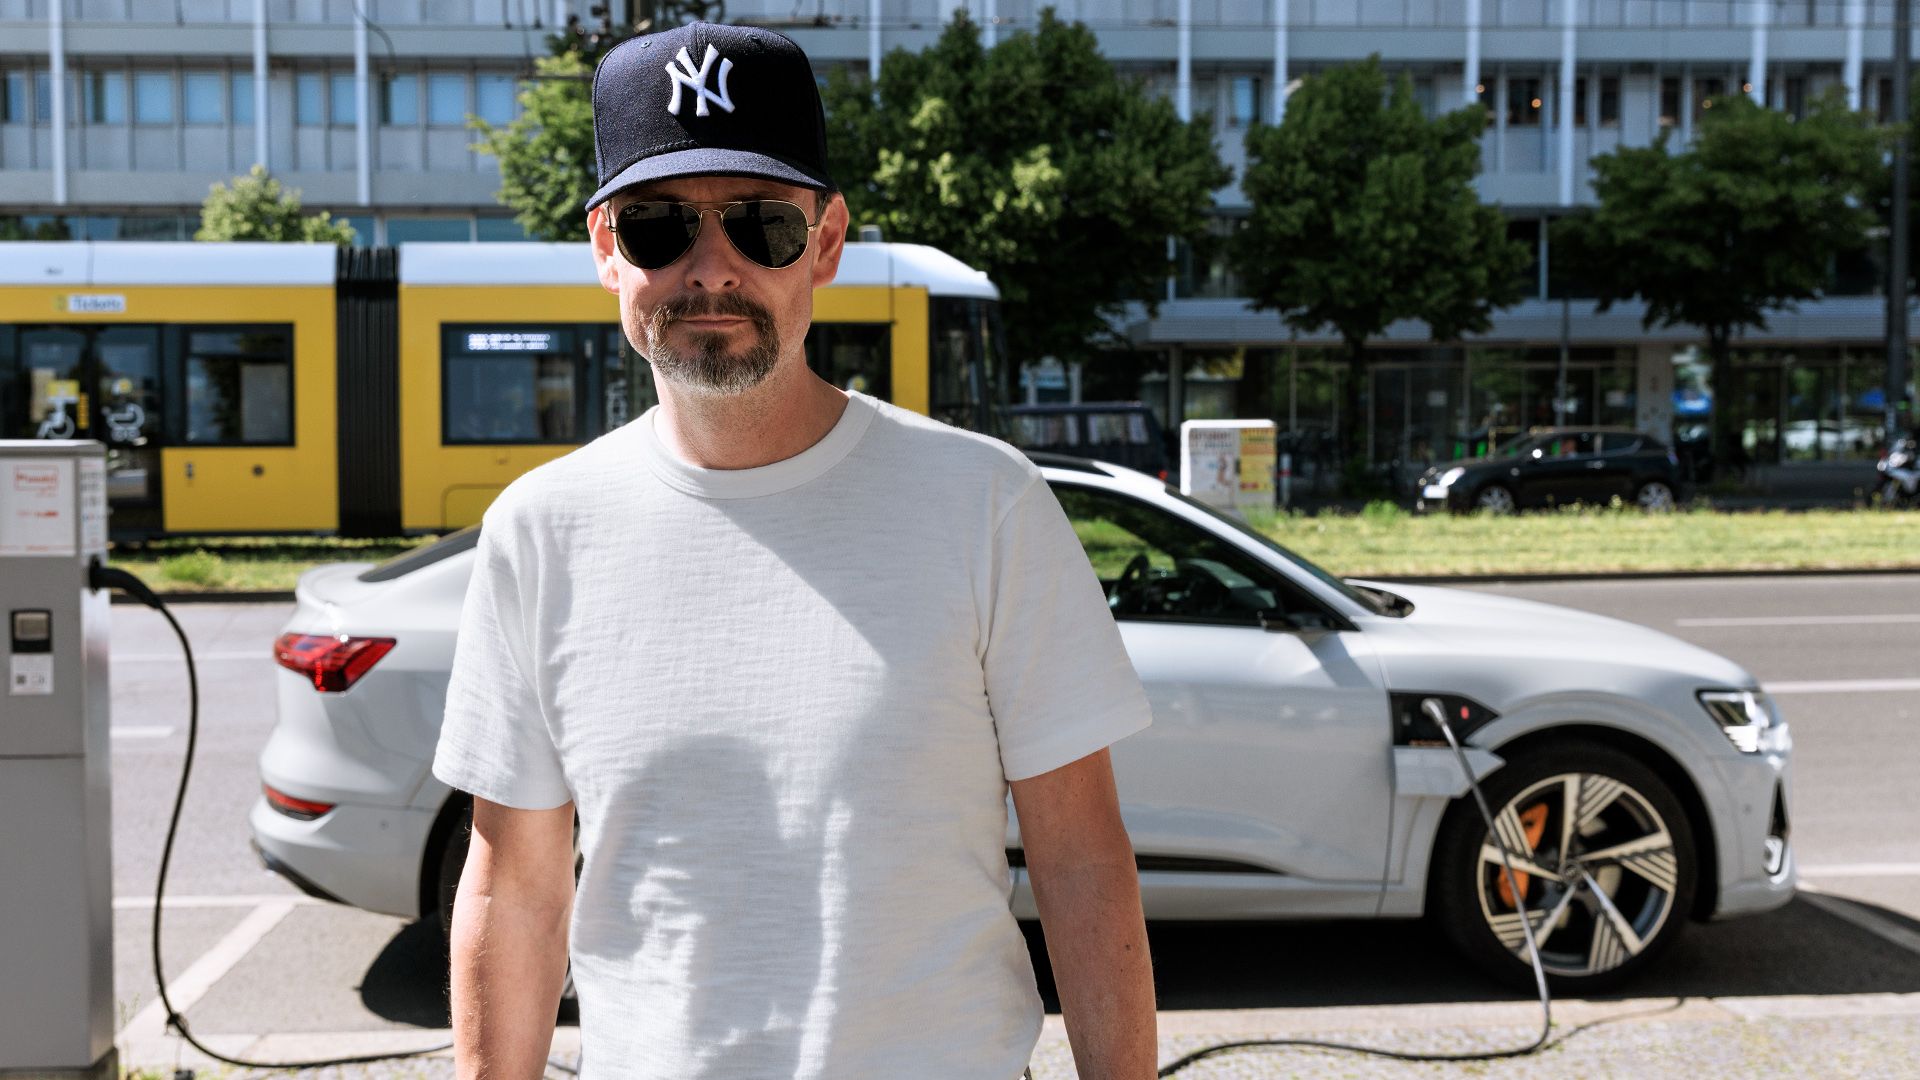 Marco Voigt branche son Audi e-tron Sportback blanc sur une station de recharge dans le centre-ville de Berlin.